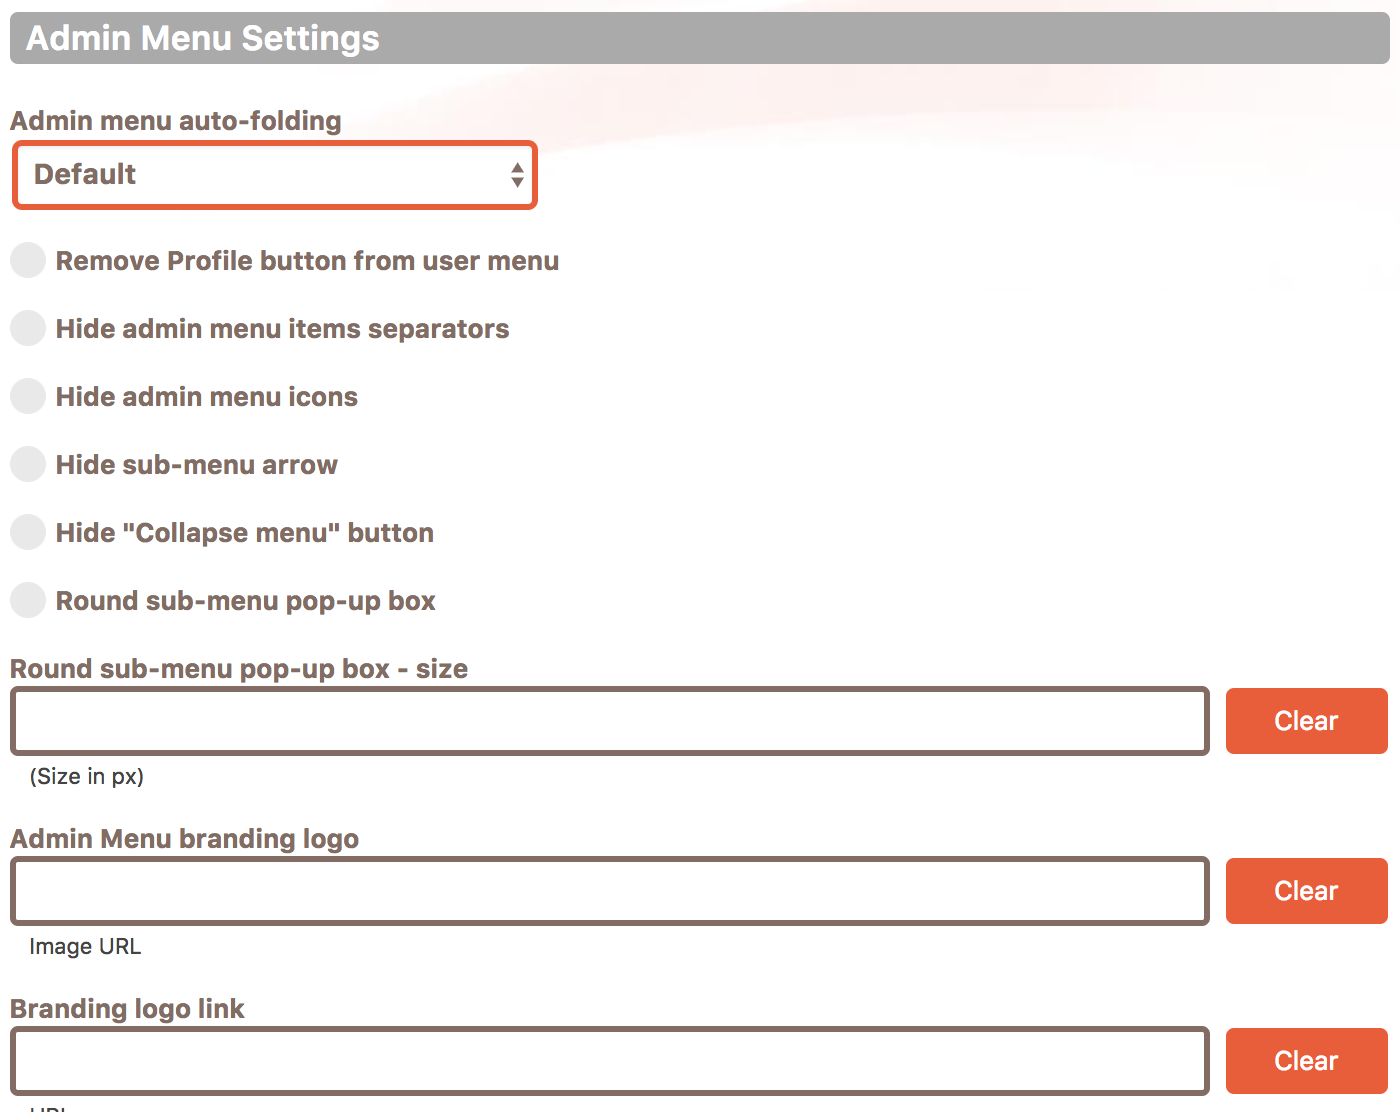 Admin menu settings in the Cusmin Admin menu editor